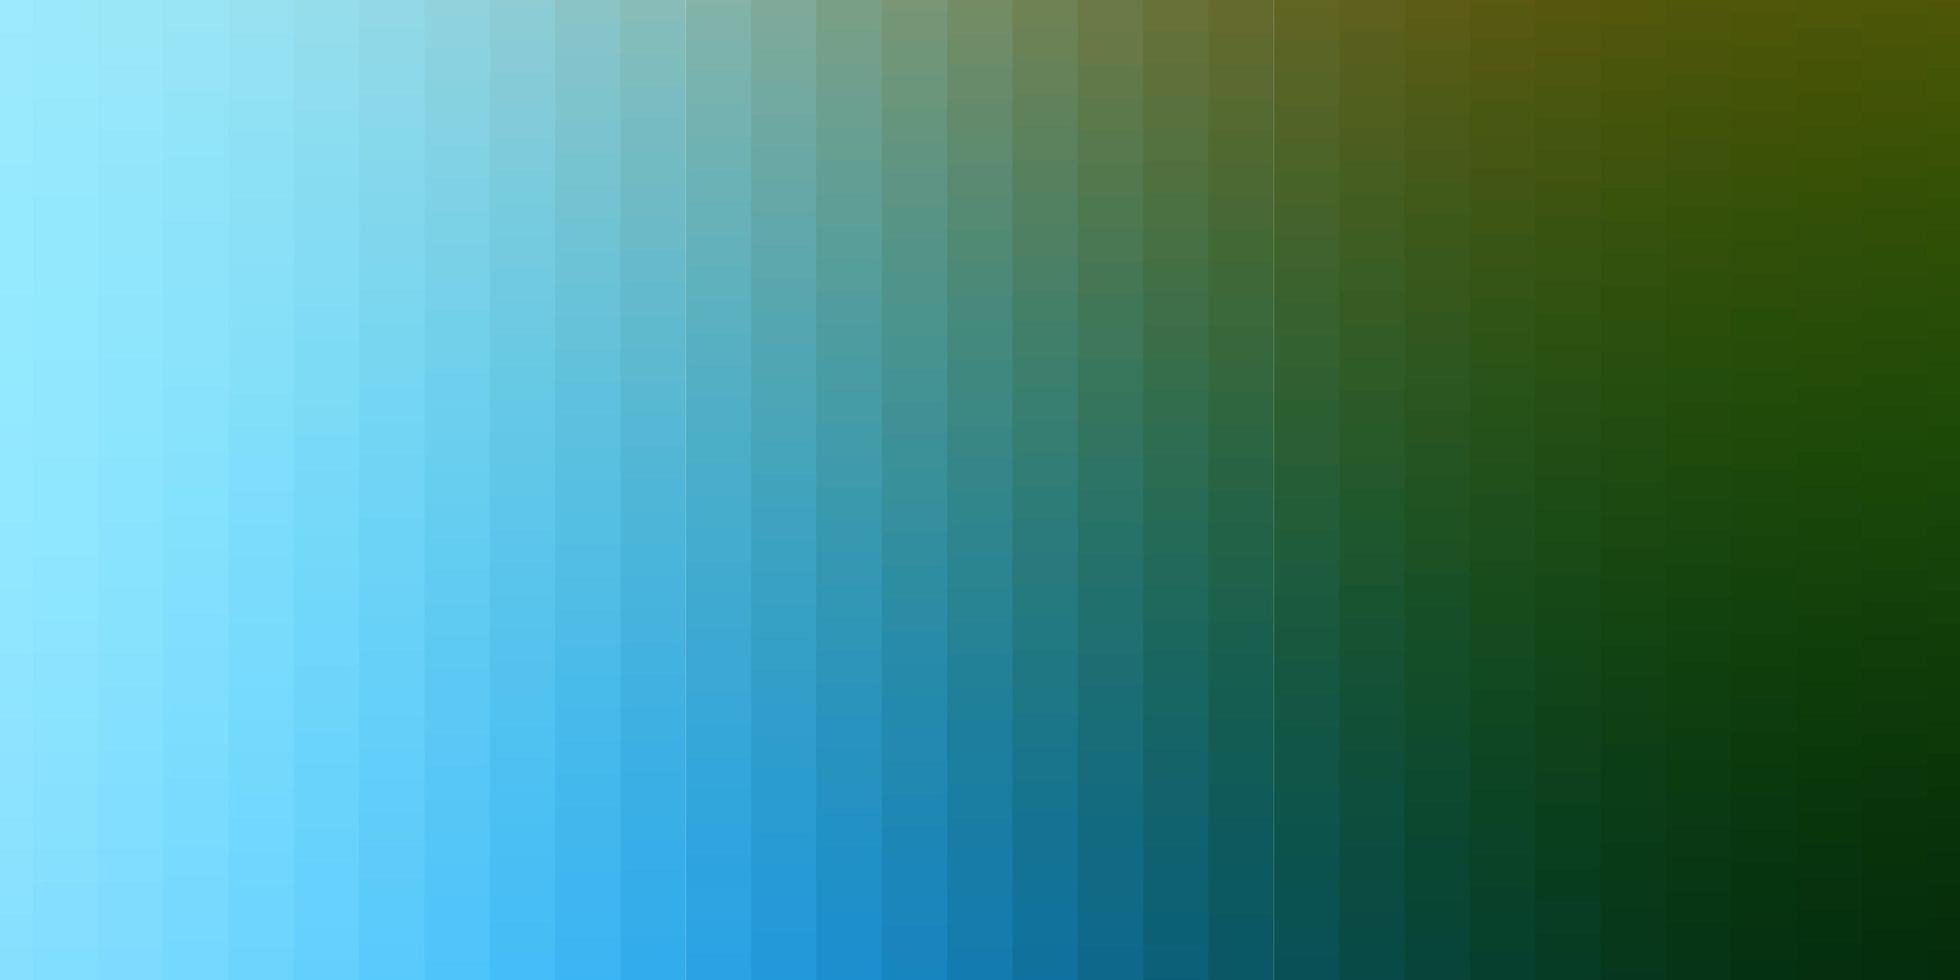 fundo vector azul claro verde em retângulos de estilo poligonal com gradiente colorido no padrão de fundo abstrato para anúncios comerciais